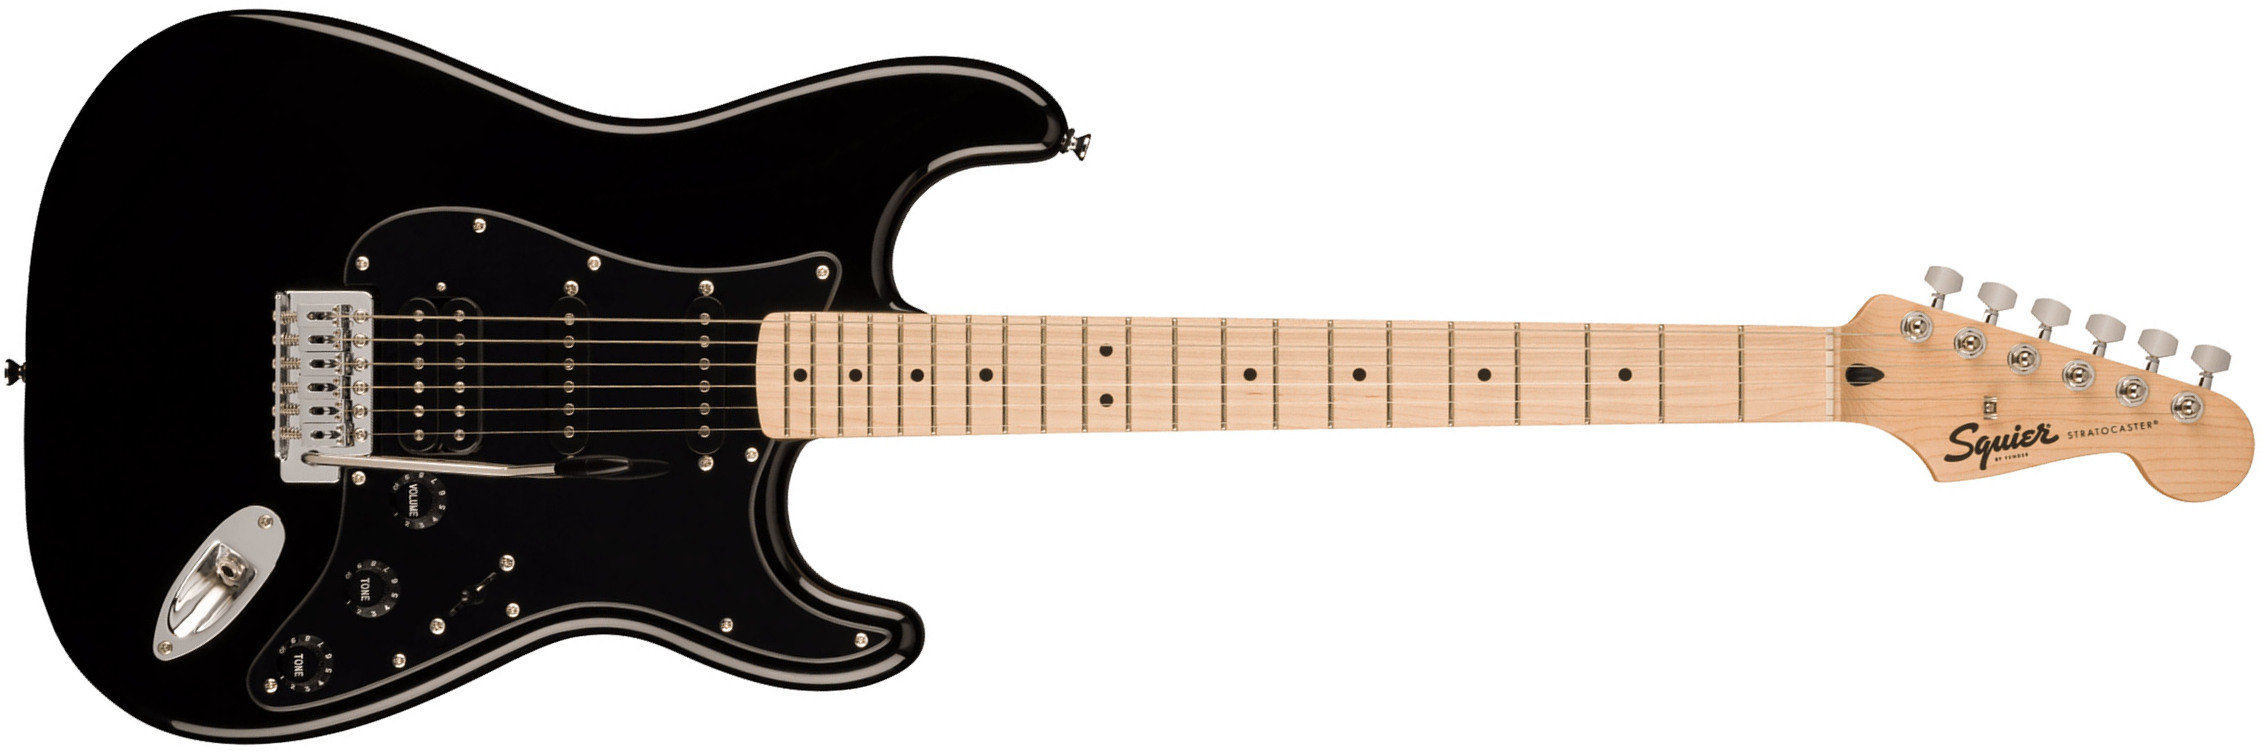 Squier Strat Sonic Hss Trem Mn - Black - Elektrische gitaar in Str-vorm - Main picture